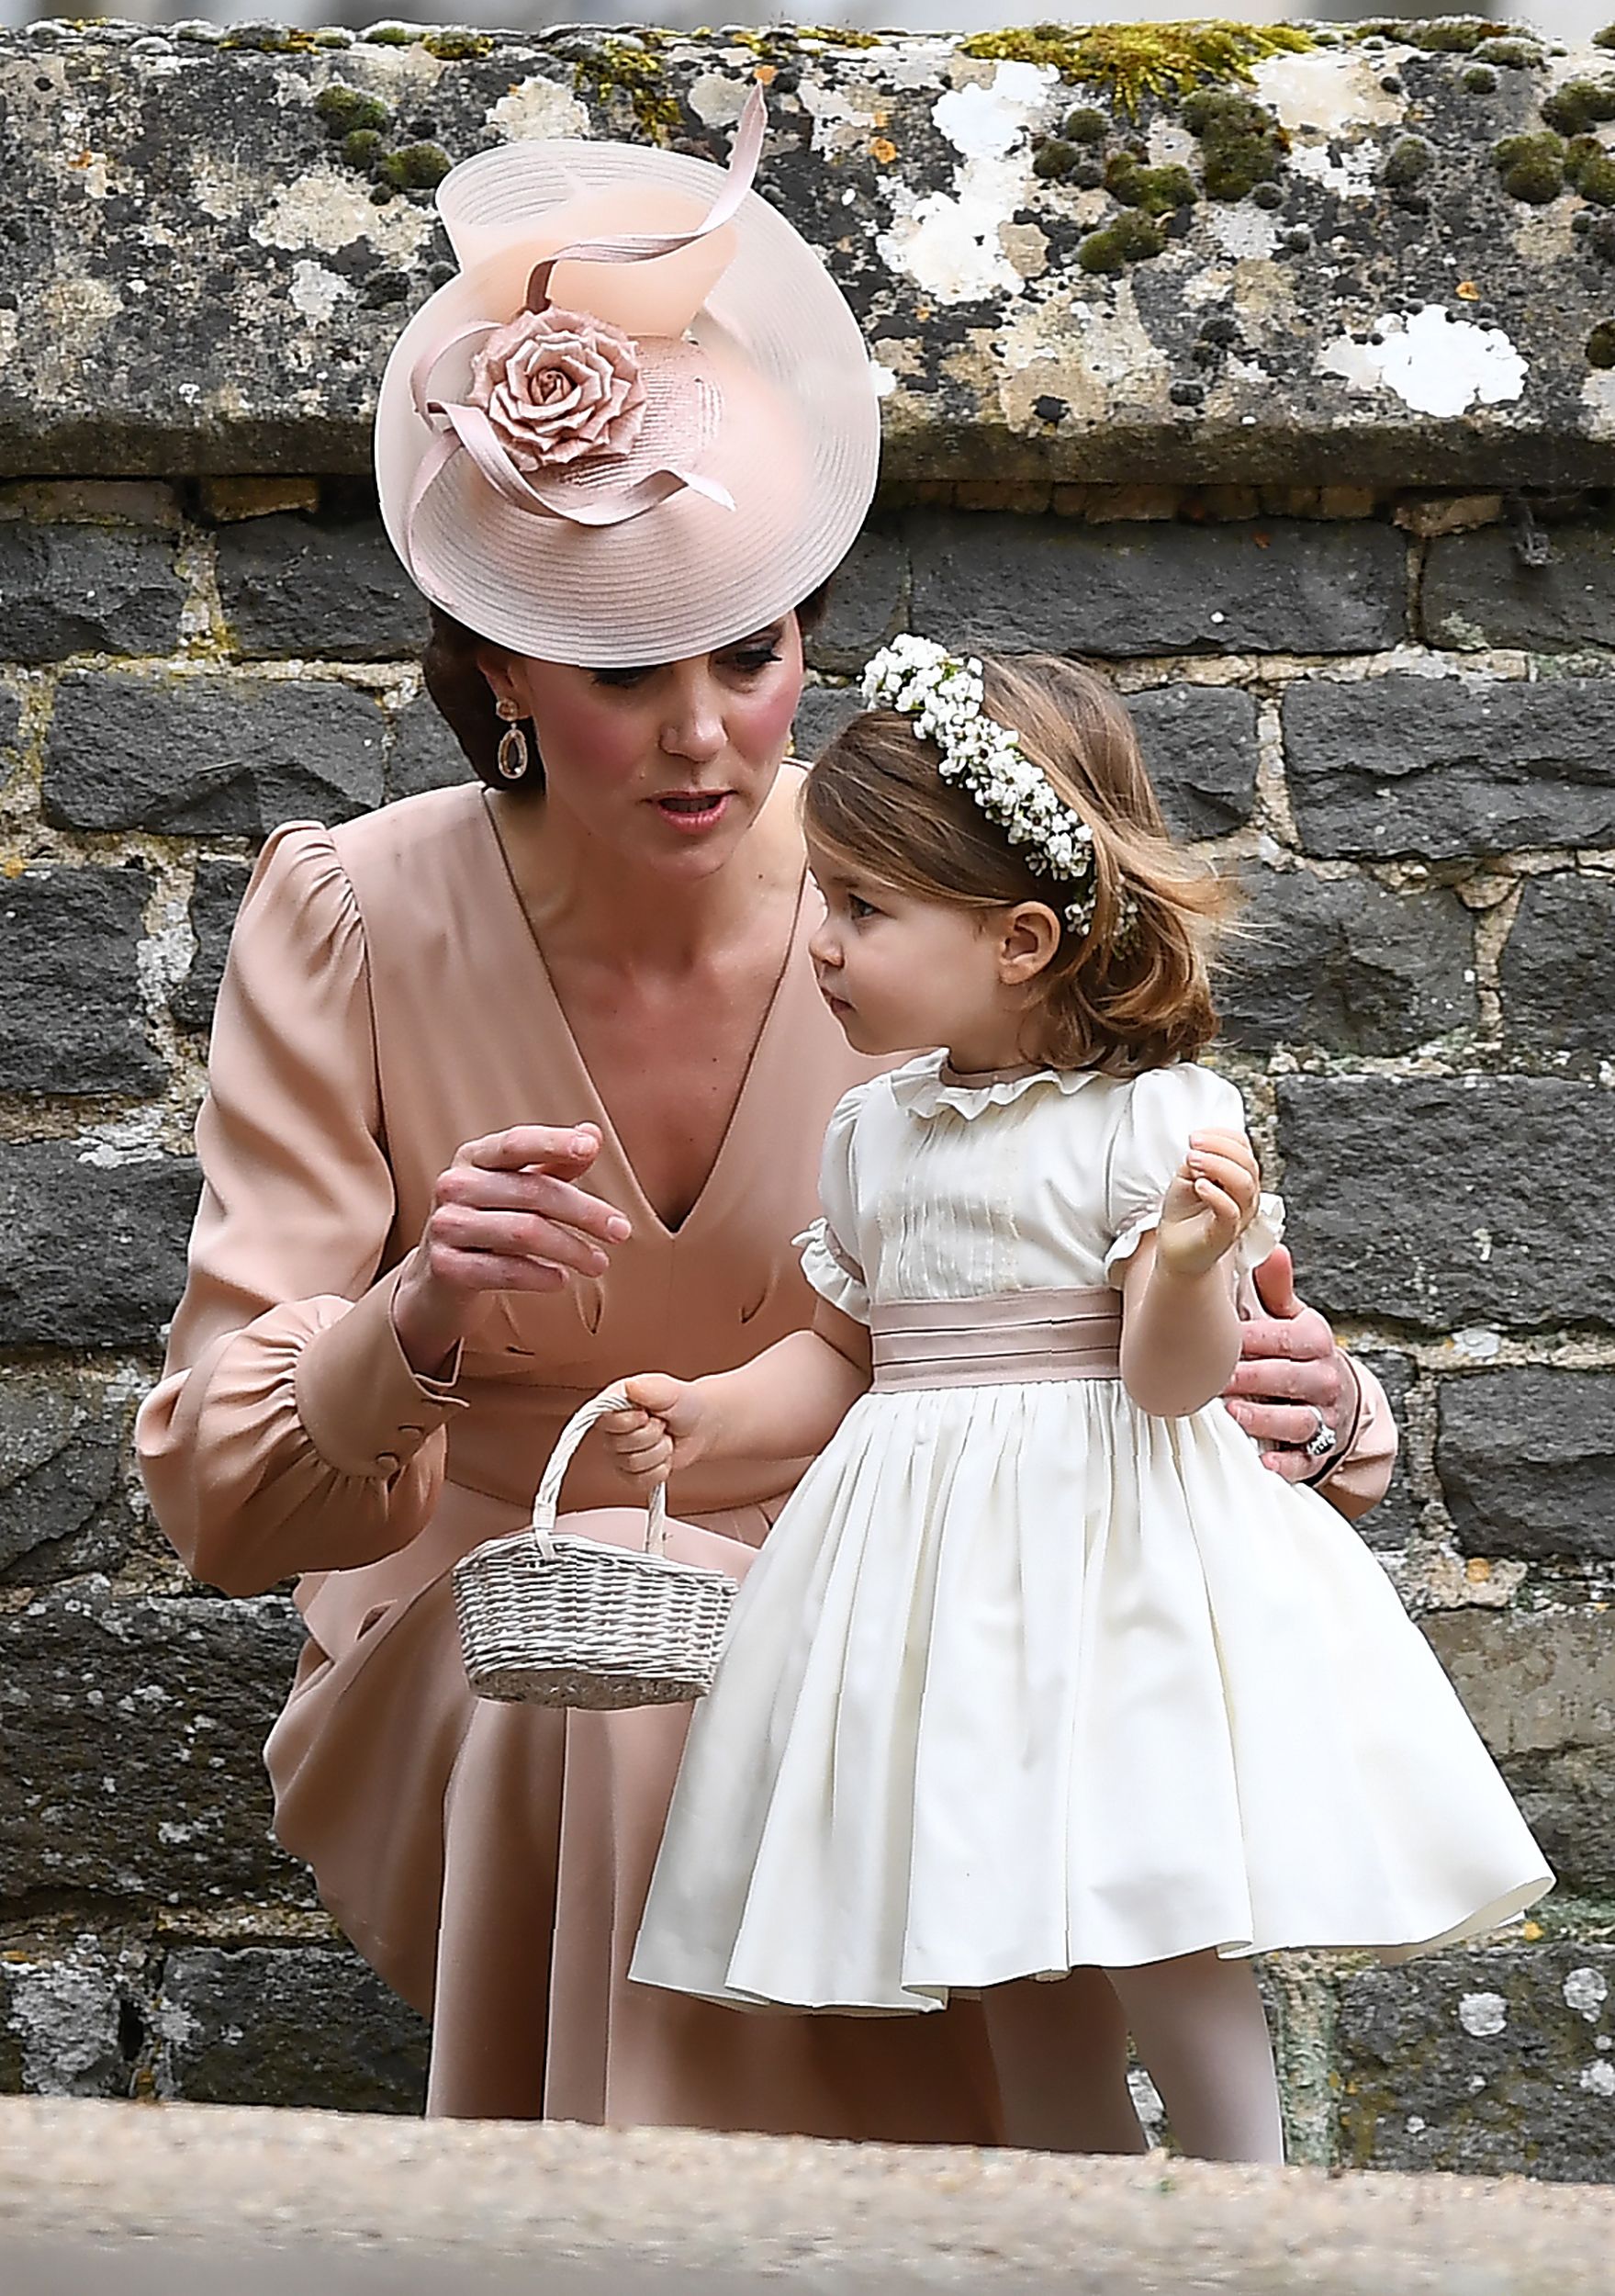 كاثرين دوقة كامبريدج وابنتها الأميرة شارلوت